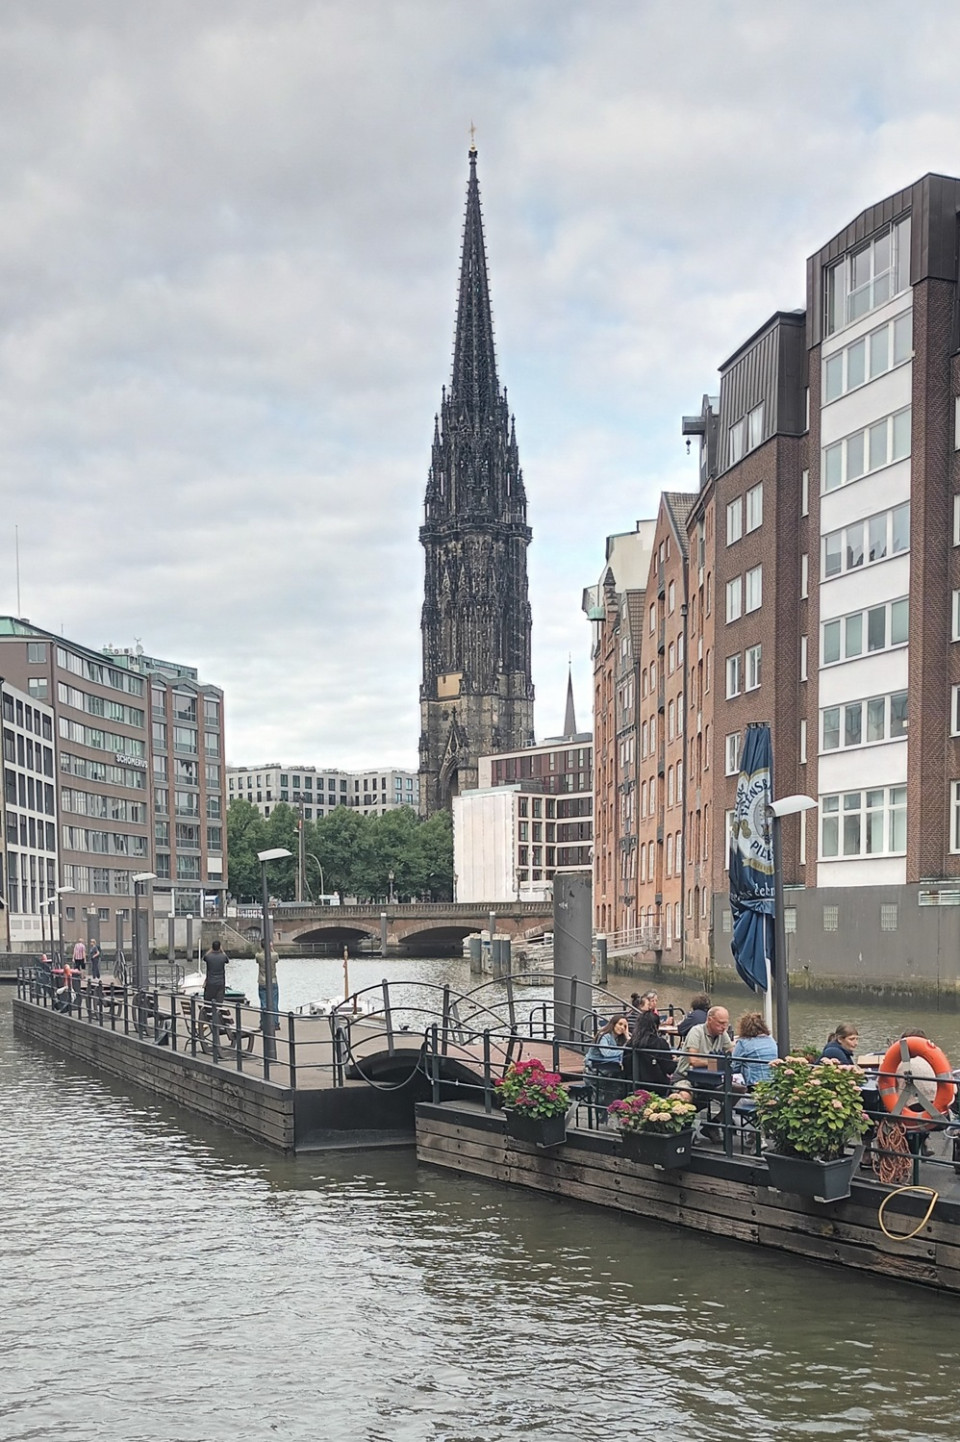 Uno de los canales de Hamburgo con la torre de San Nikolas